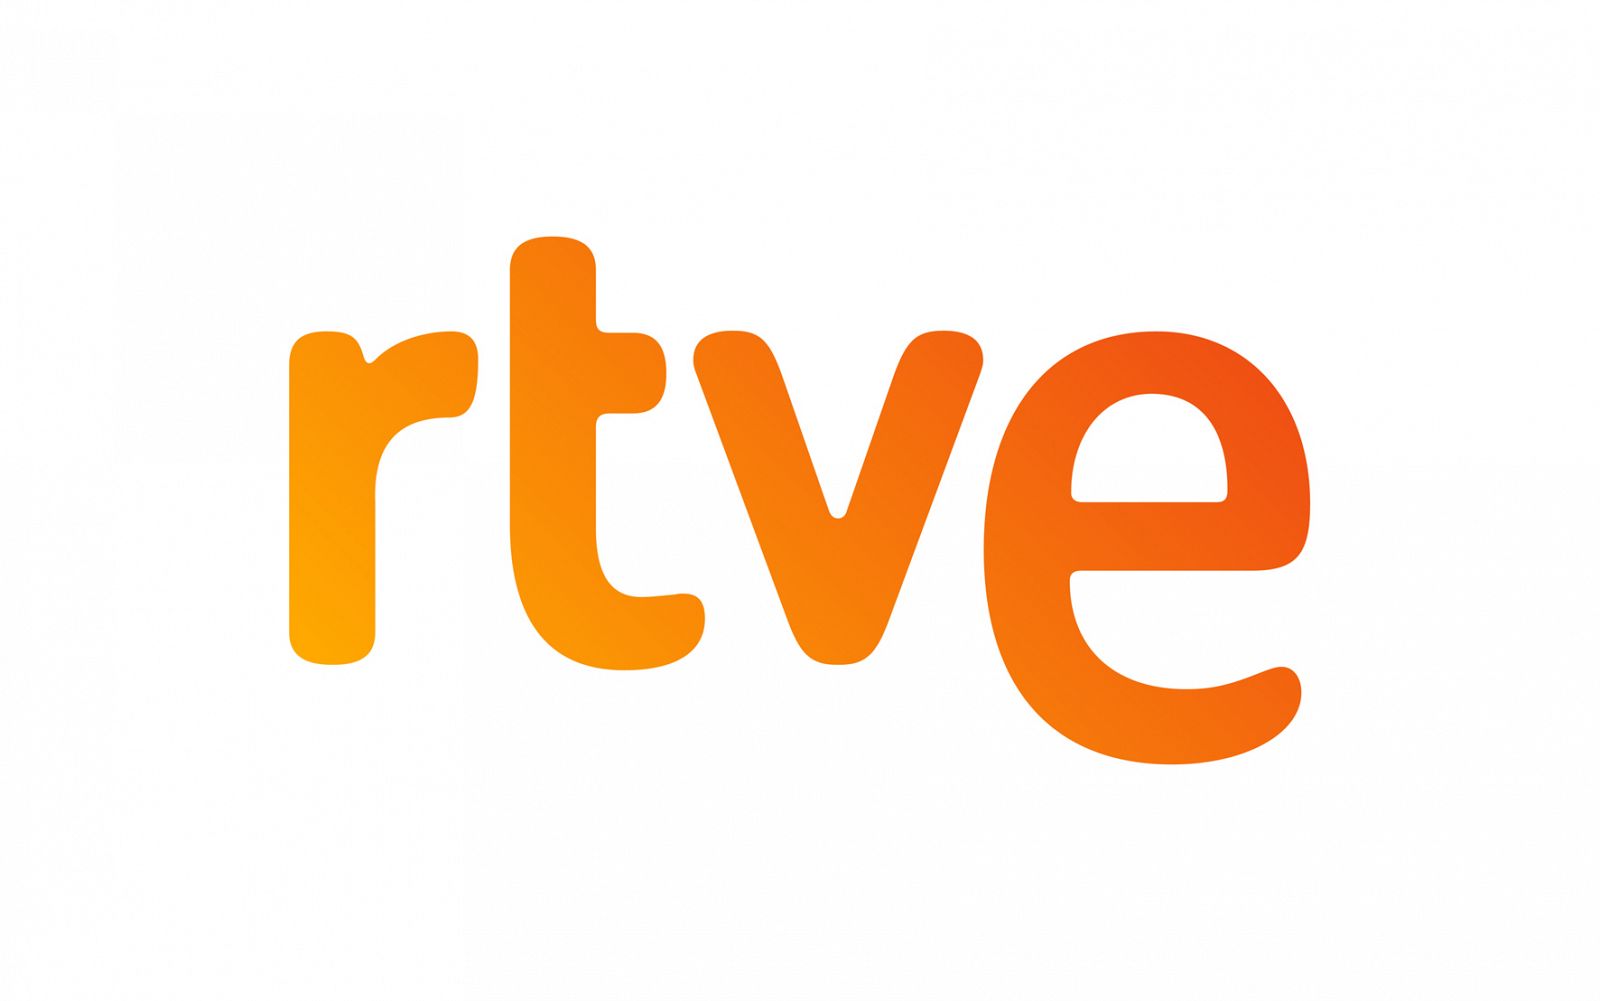 Logotipo de RTVE